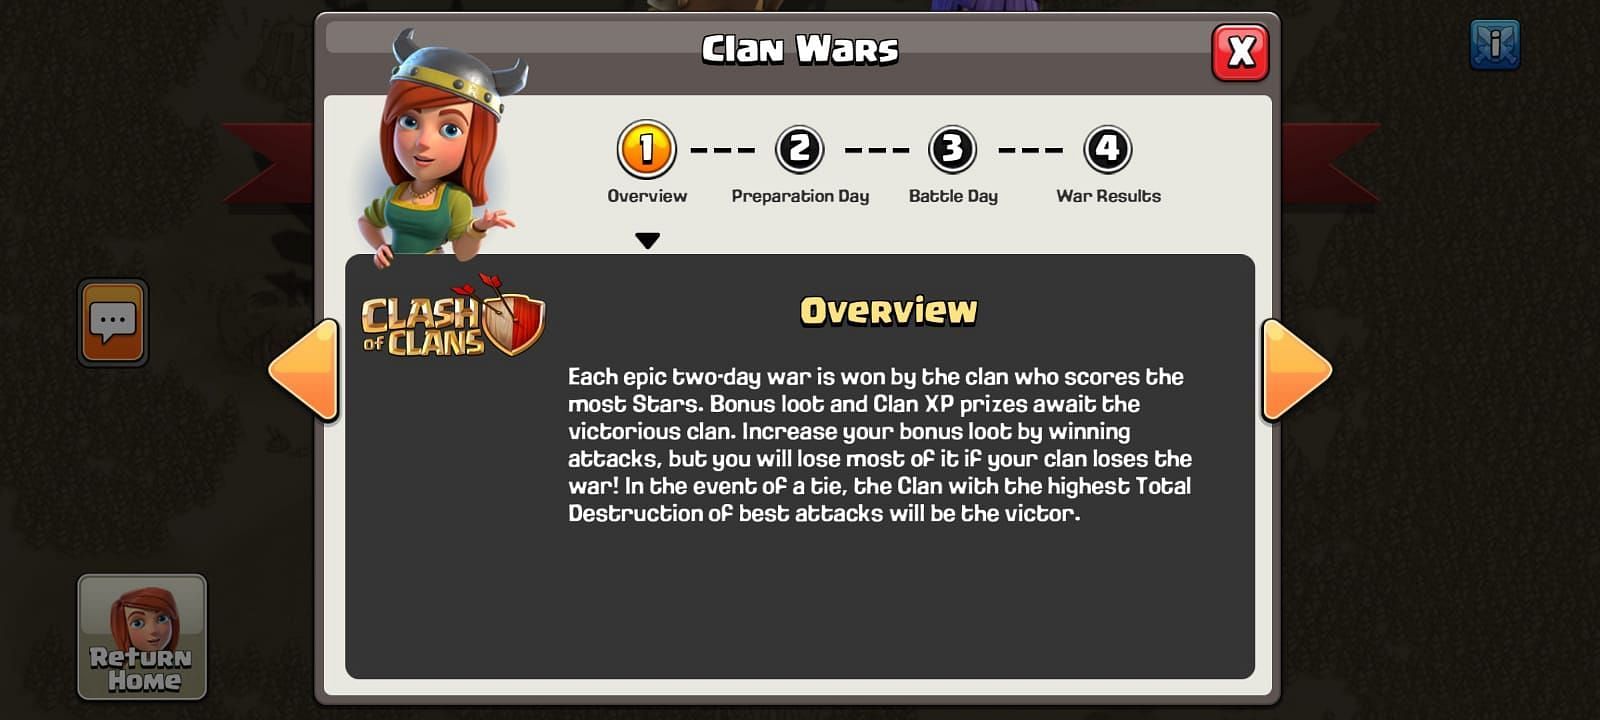 Clan Wars (Image via clash of clans)